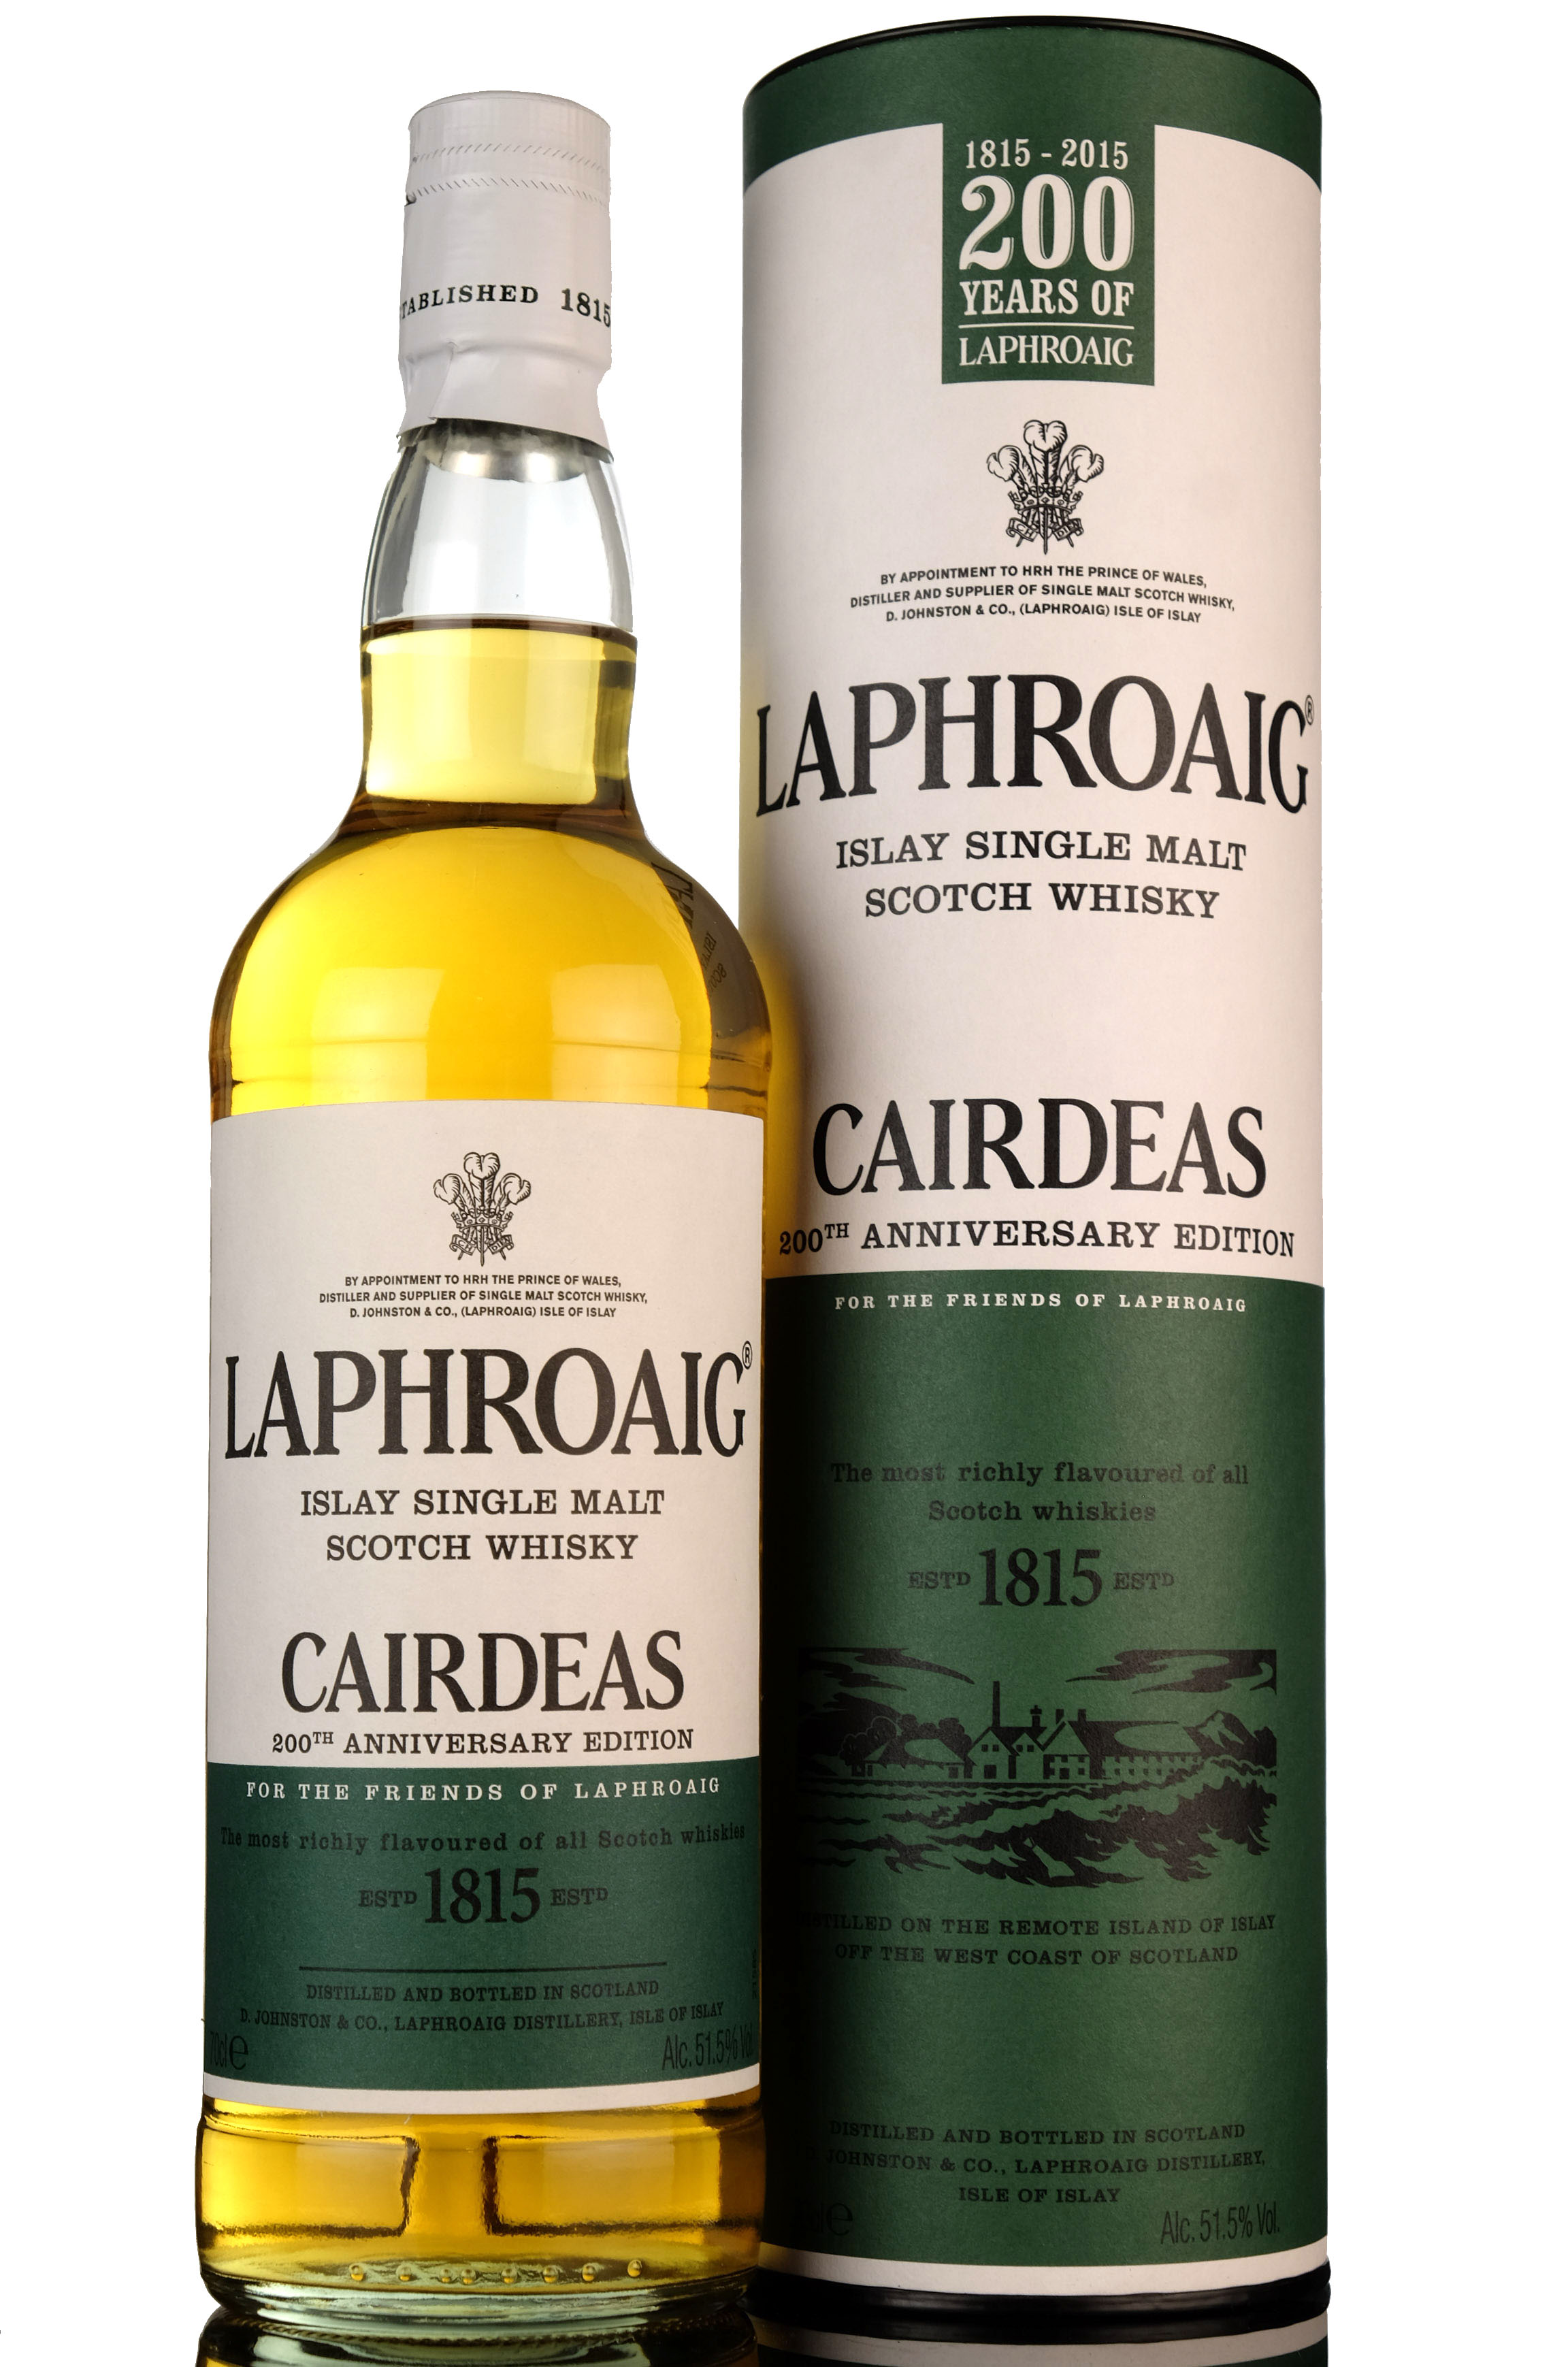 Laphroaig Cairdeas - 200th Anniversary